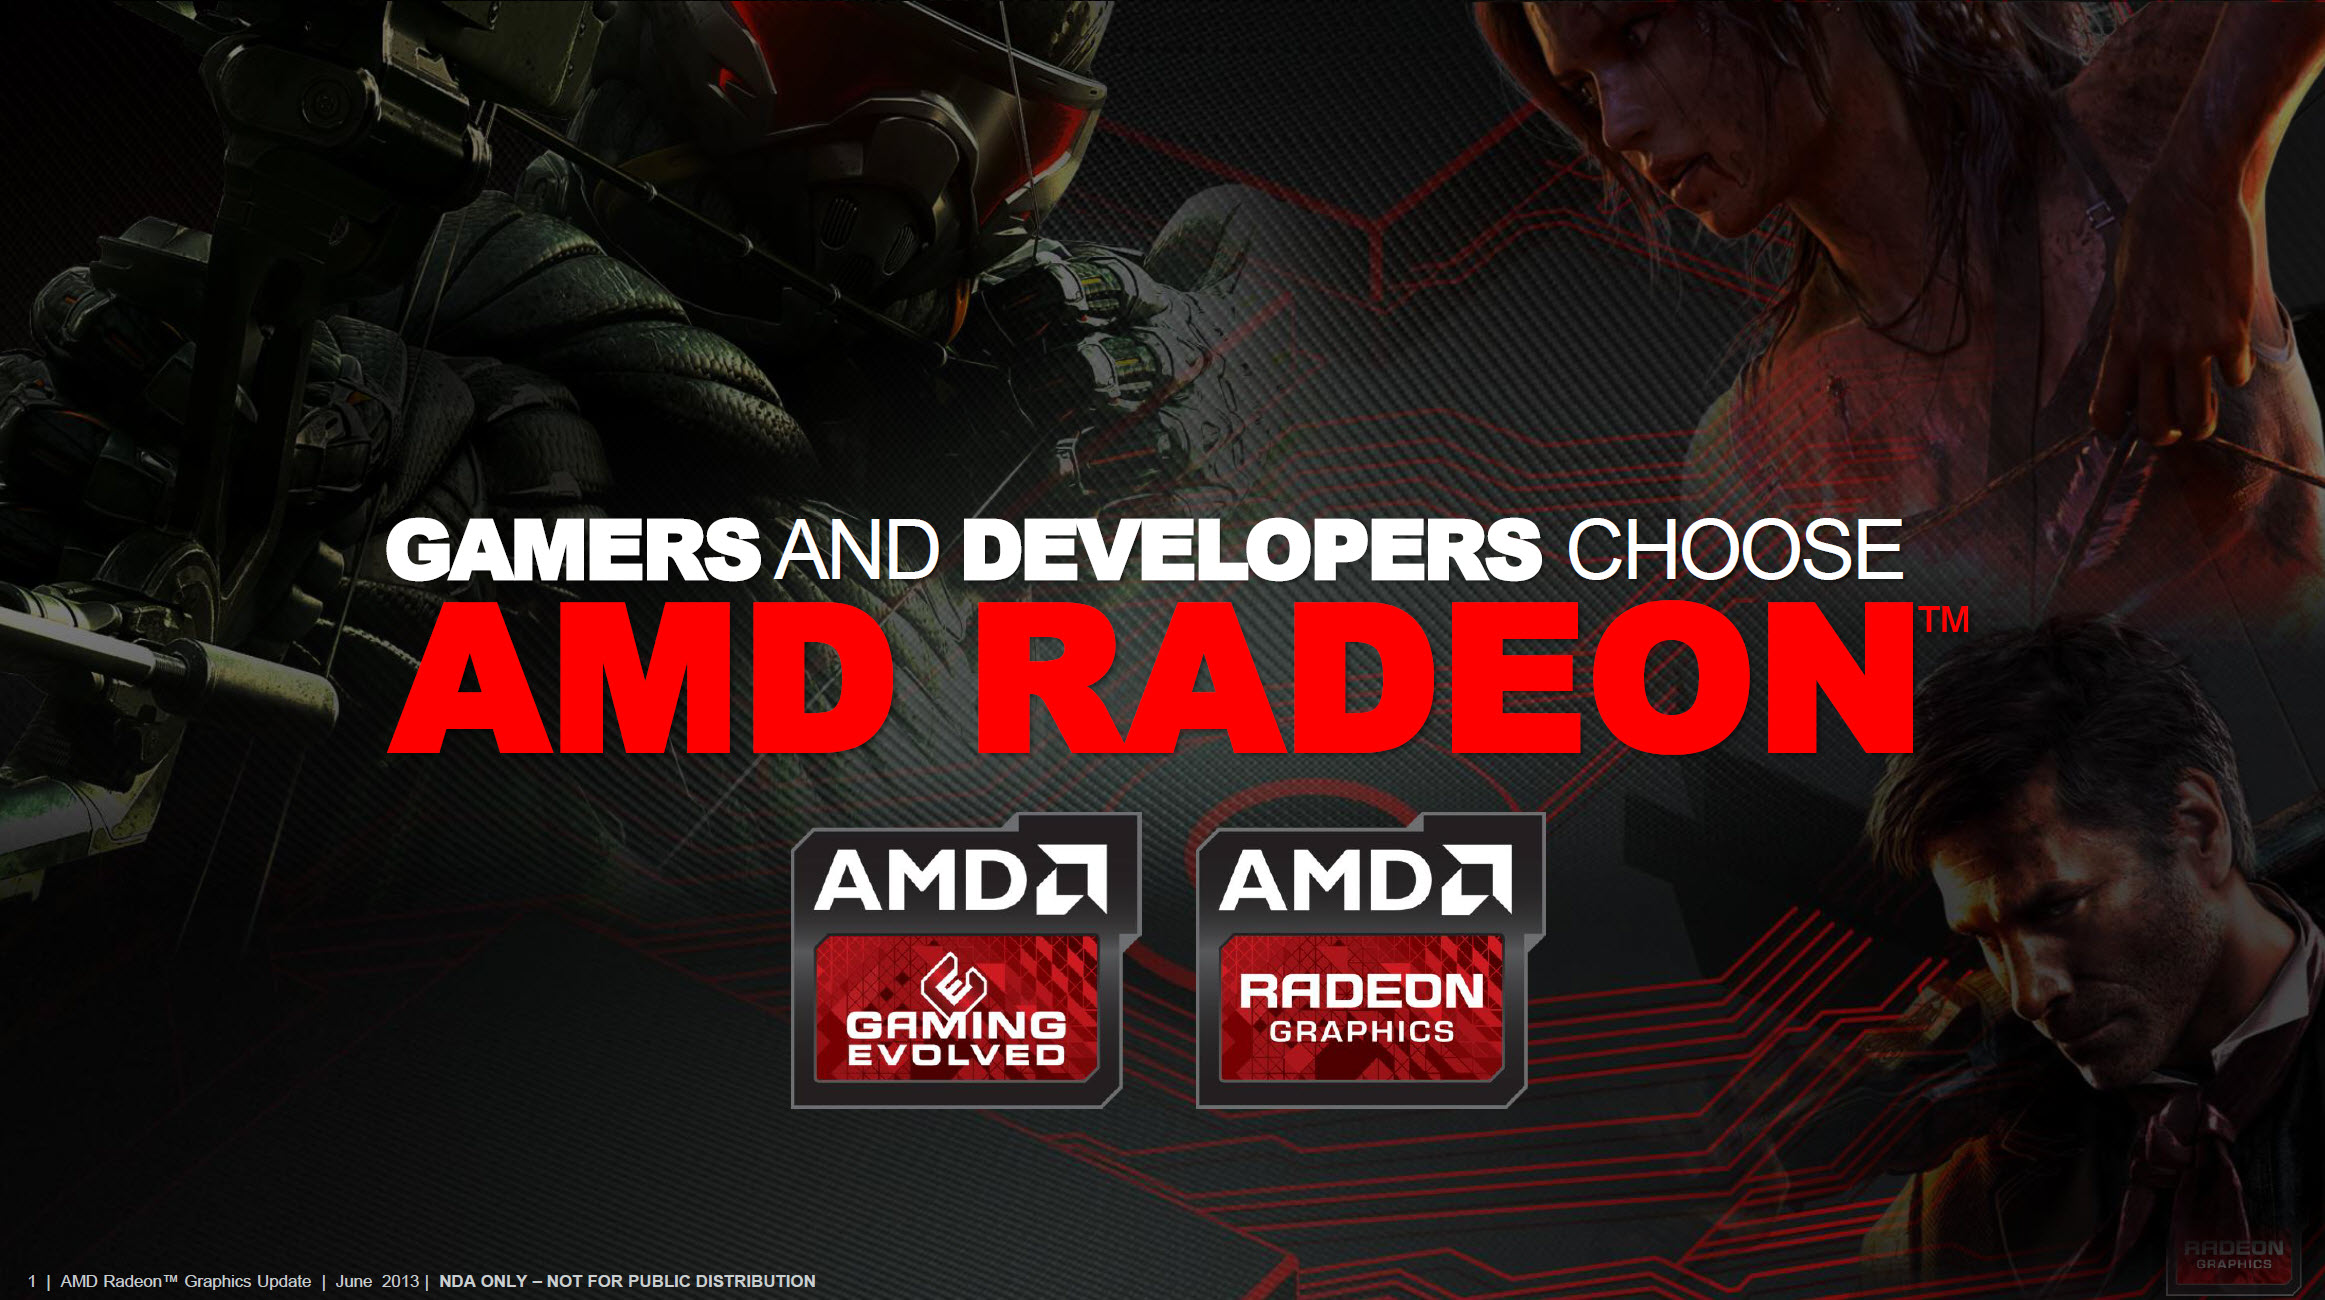 Immagine pubblicata in relazione al seguente contenuto: Le nuove Radeon high-end con gpu Hawaii sul mercato a ottobre | Nome immagine: news19987_AMD-Radeon-Gamers-and-Developers-Spot_1.jpg